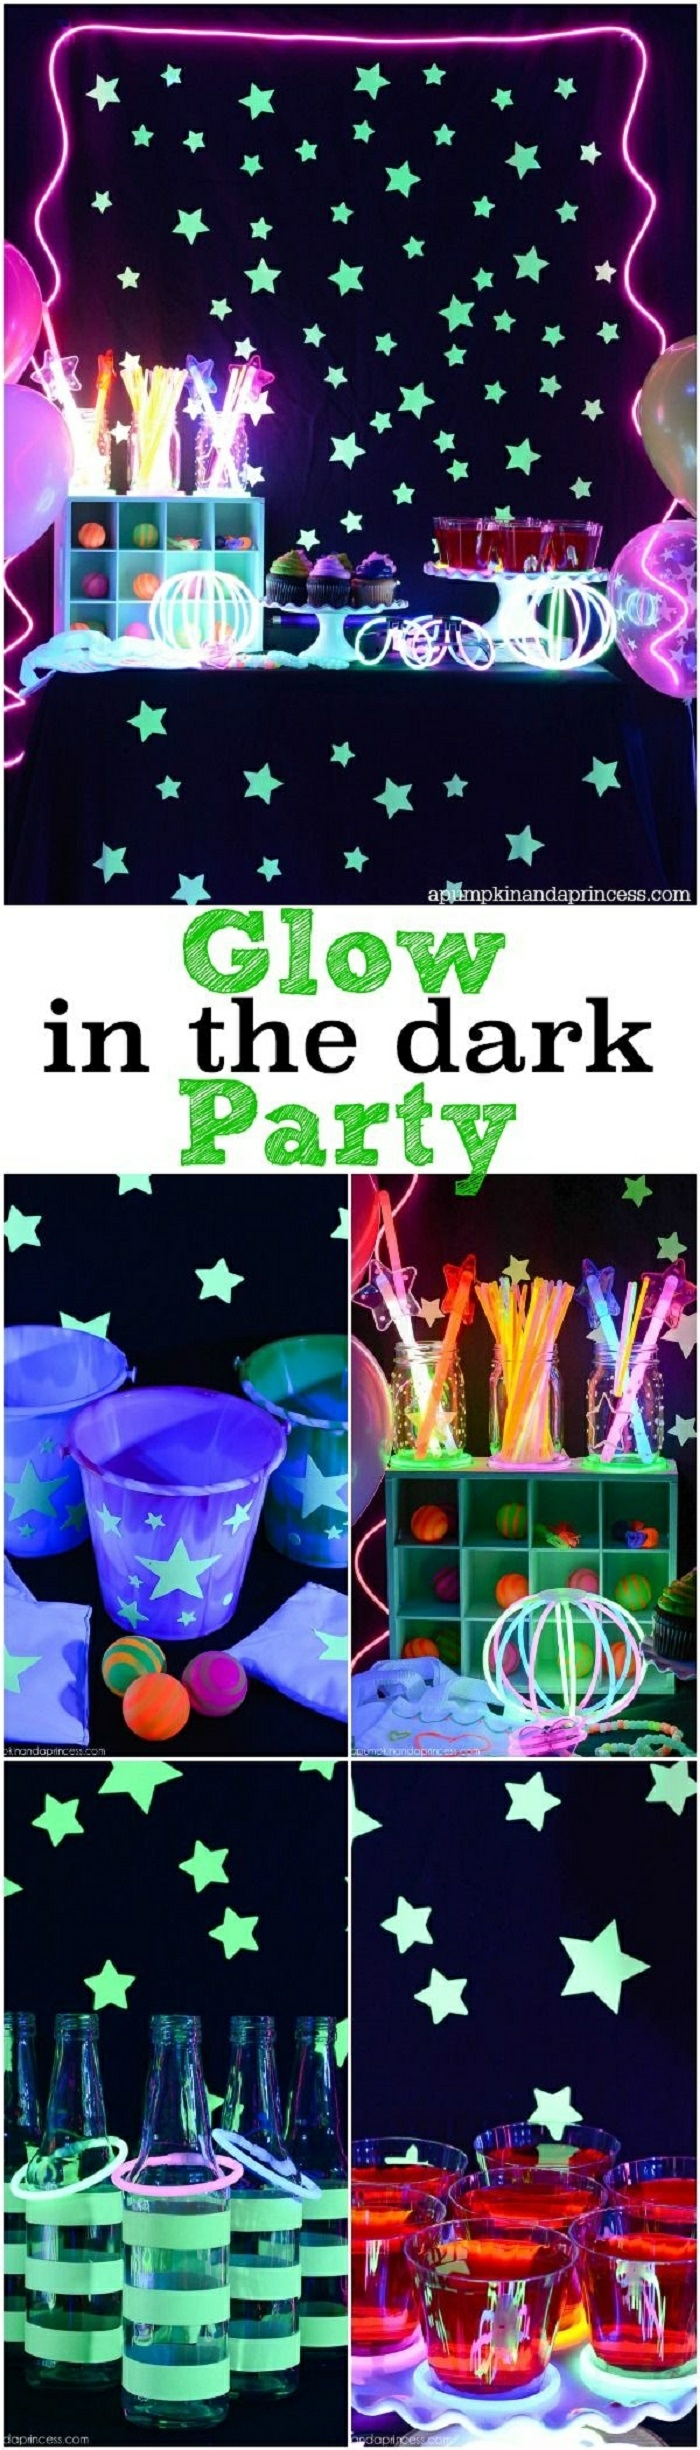 18 geburtstag deko idee, glow in the dark party zu hause veranstalten, leuchtende dekorationen, sterne, tassen, strohhalme